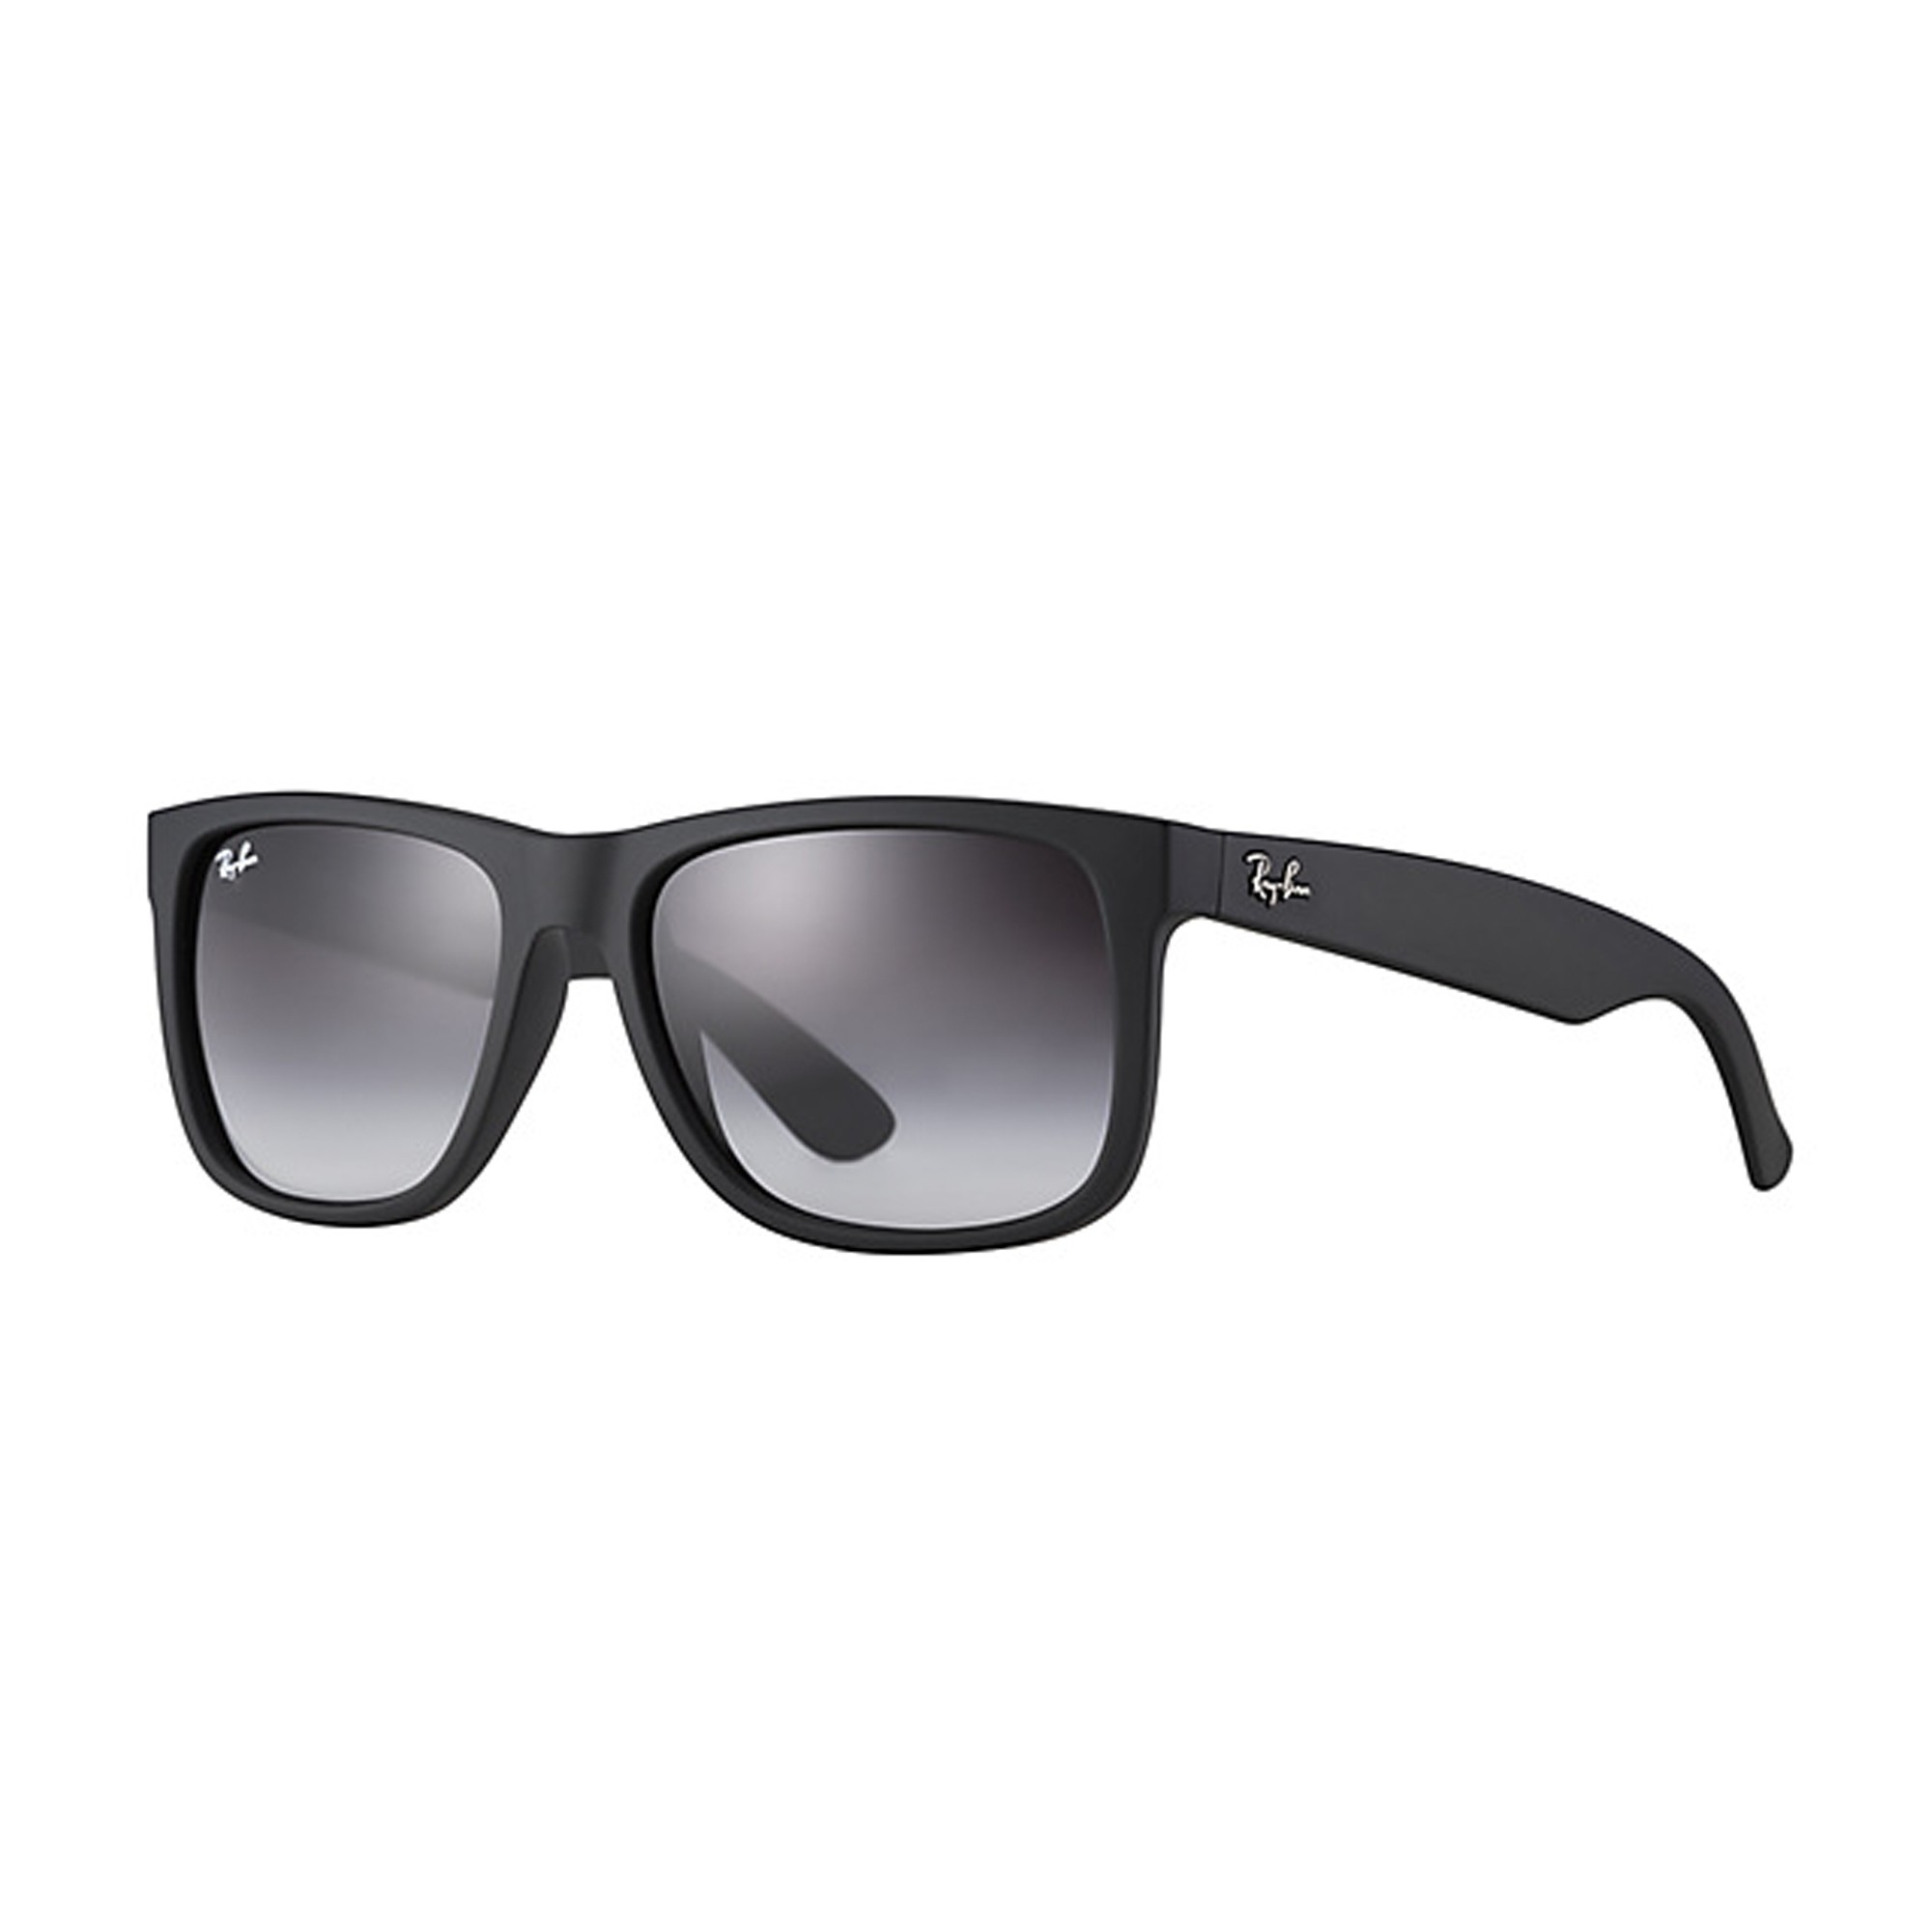 Nº 1 de ventas en gafas de sol de - Blog a vista